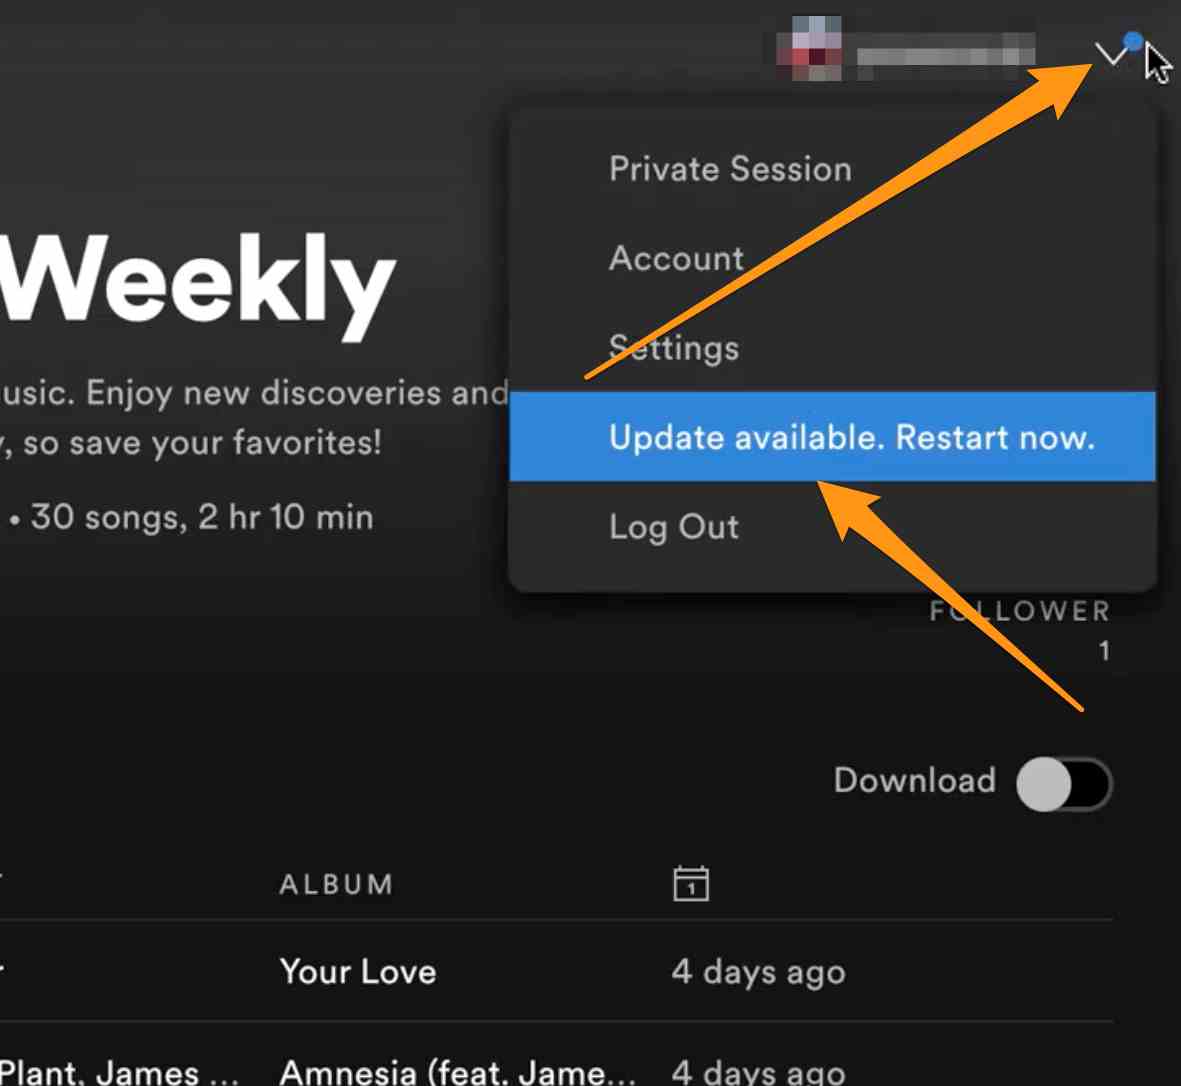 Les paroles de Spotify ne s'affichent pas : mettre à jour la version de l'application